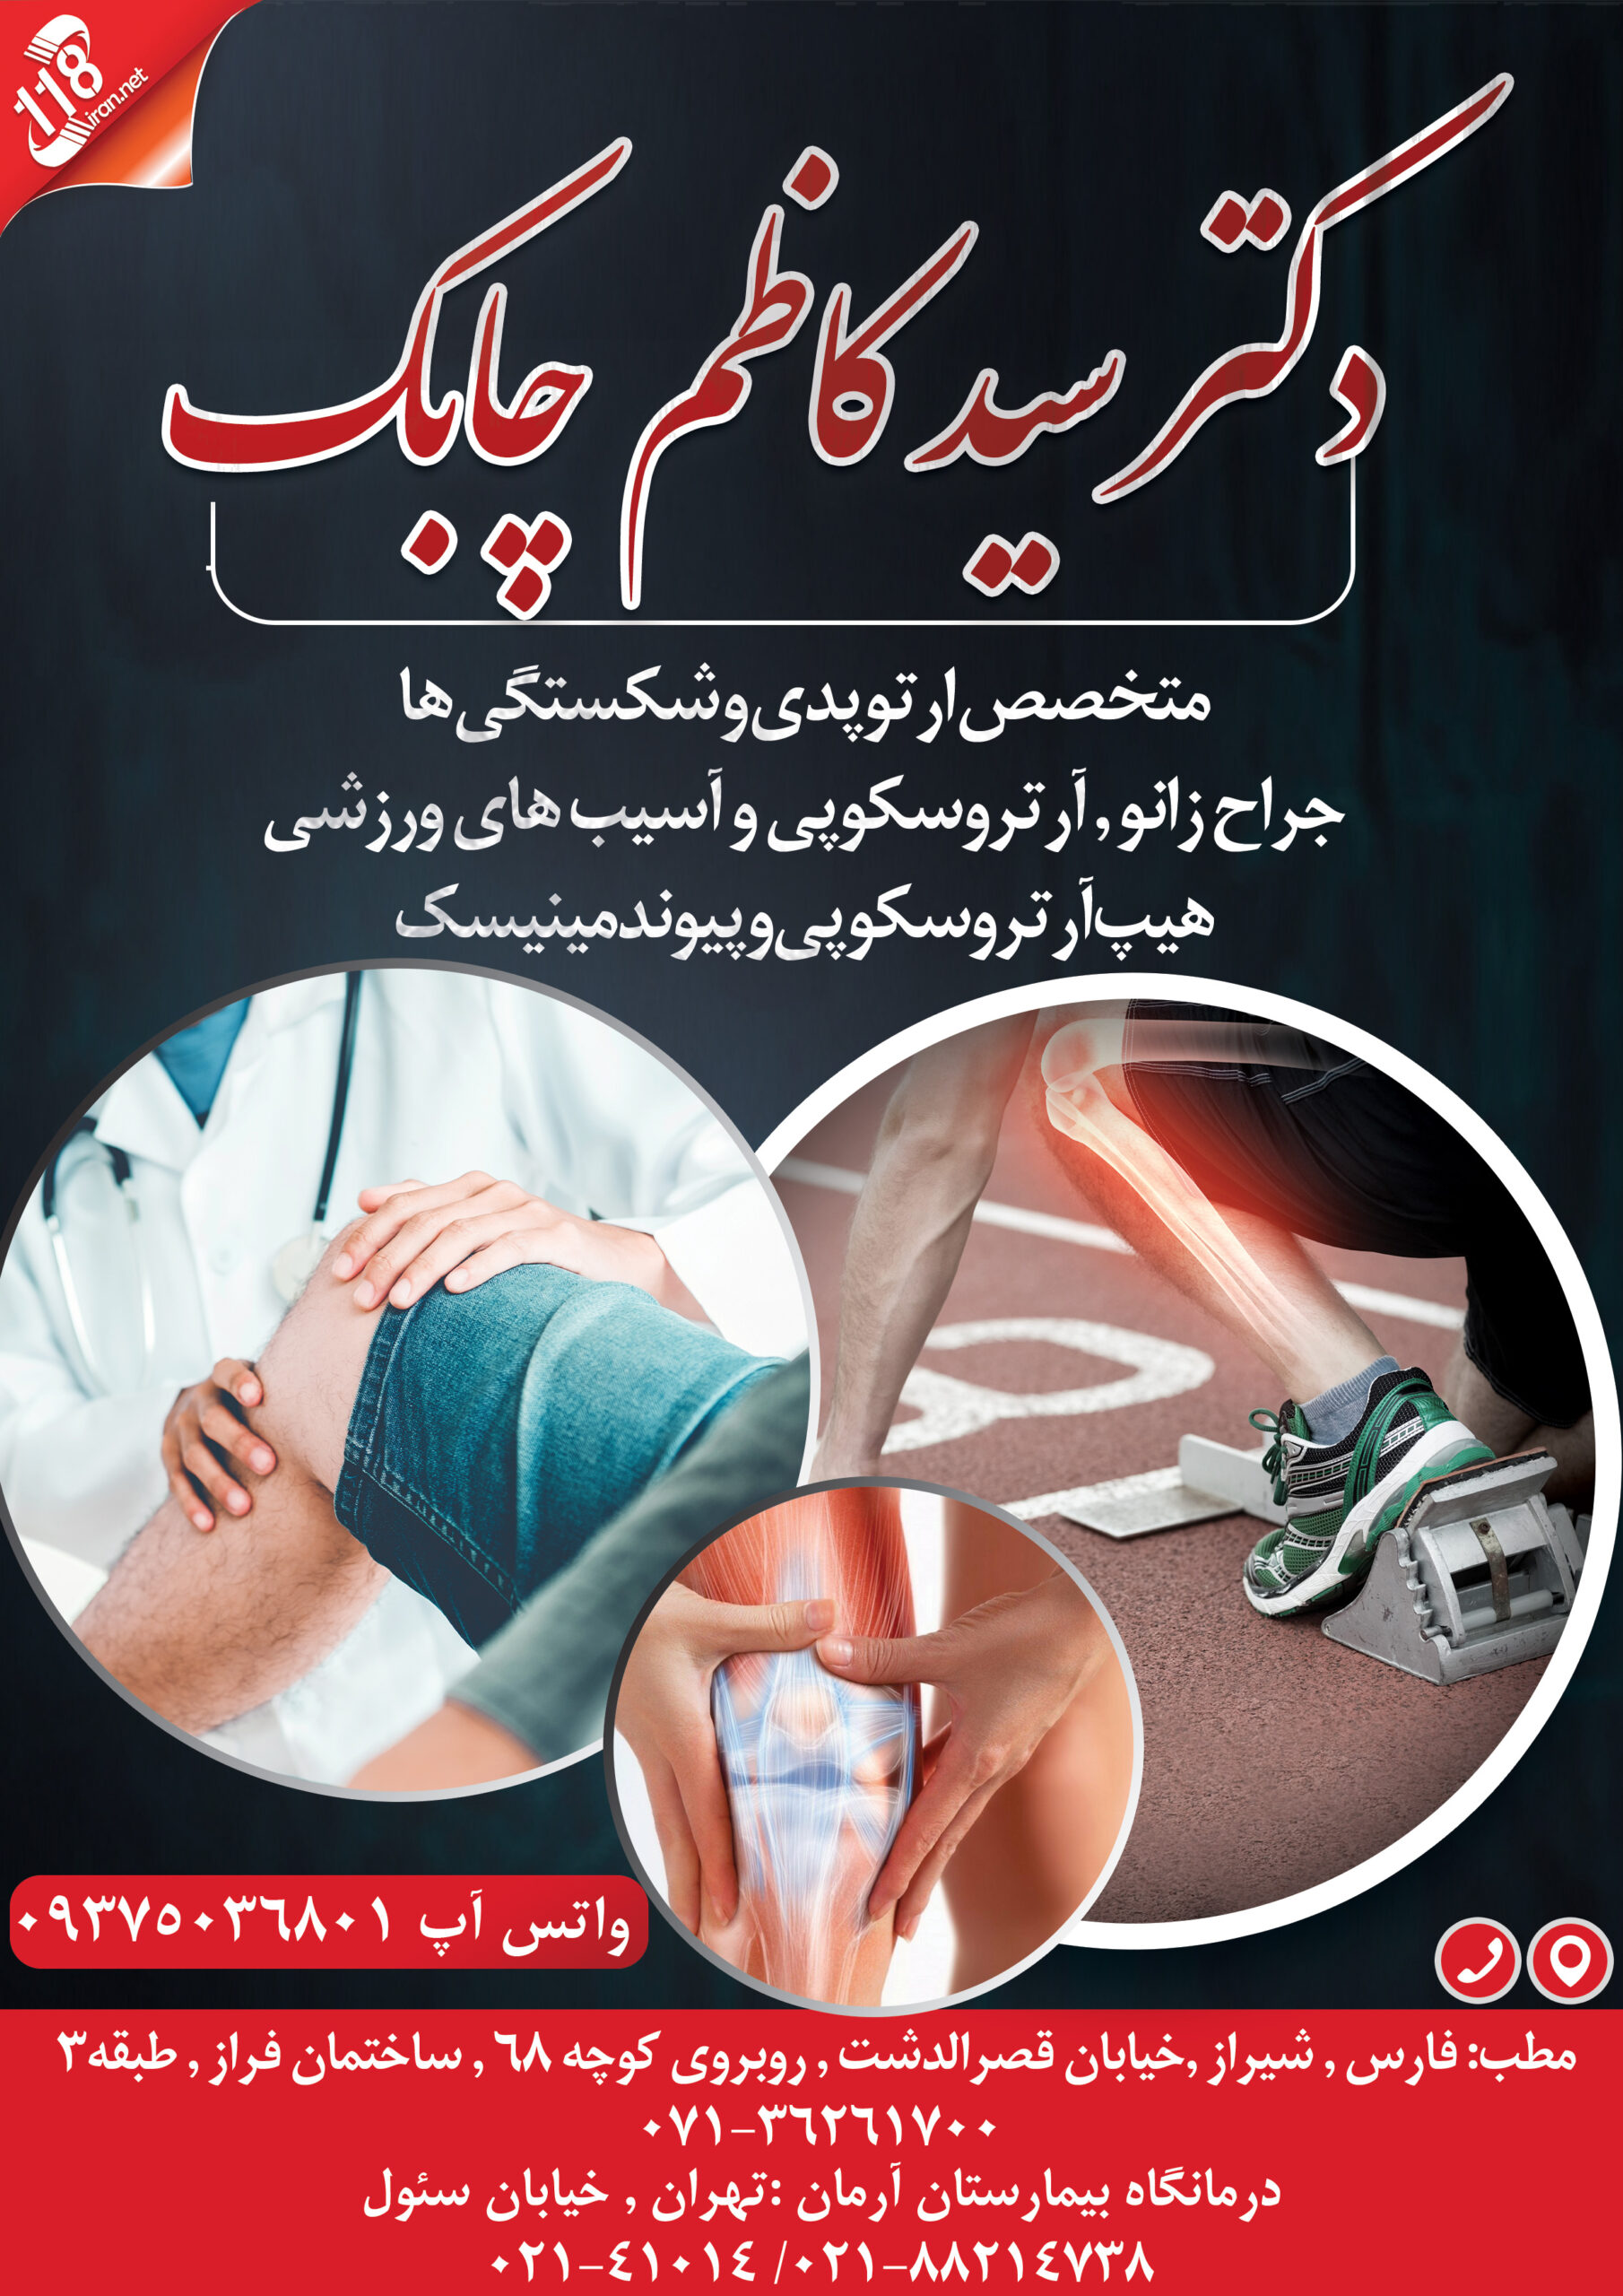  دکتر سید کاظم چابک در شیراز 